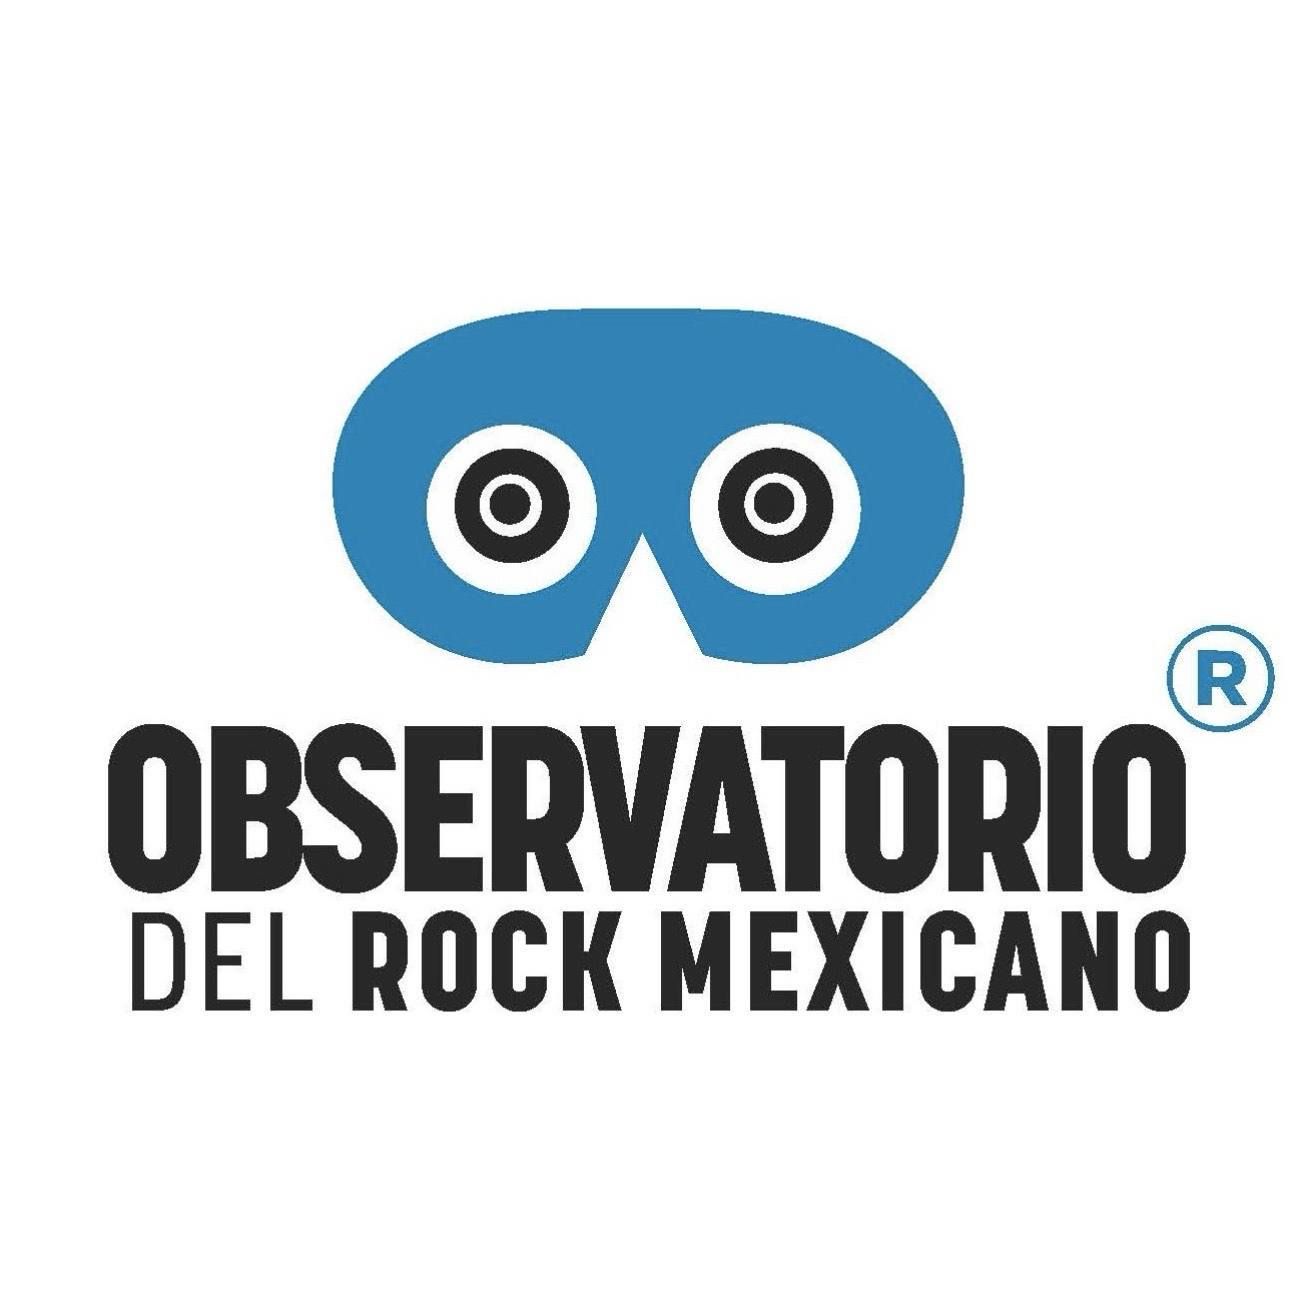  Observatorio del Rock Mexicano: Explorando el género desde una perspectiva histórica, estética, social y cultural